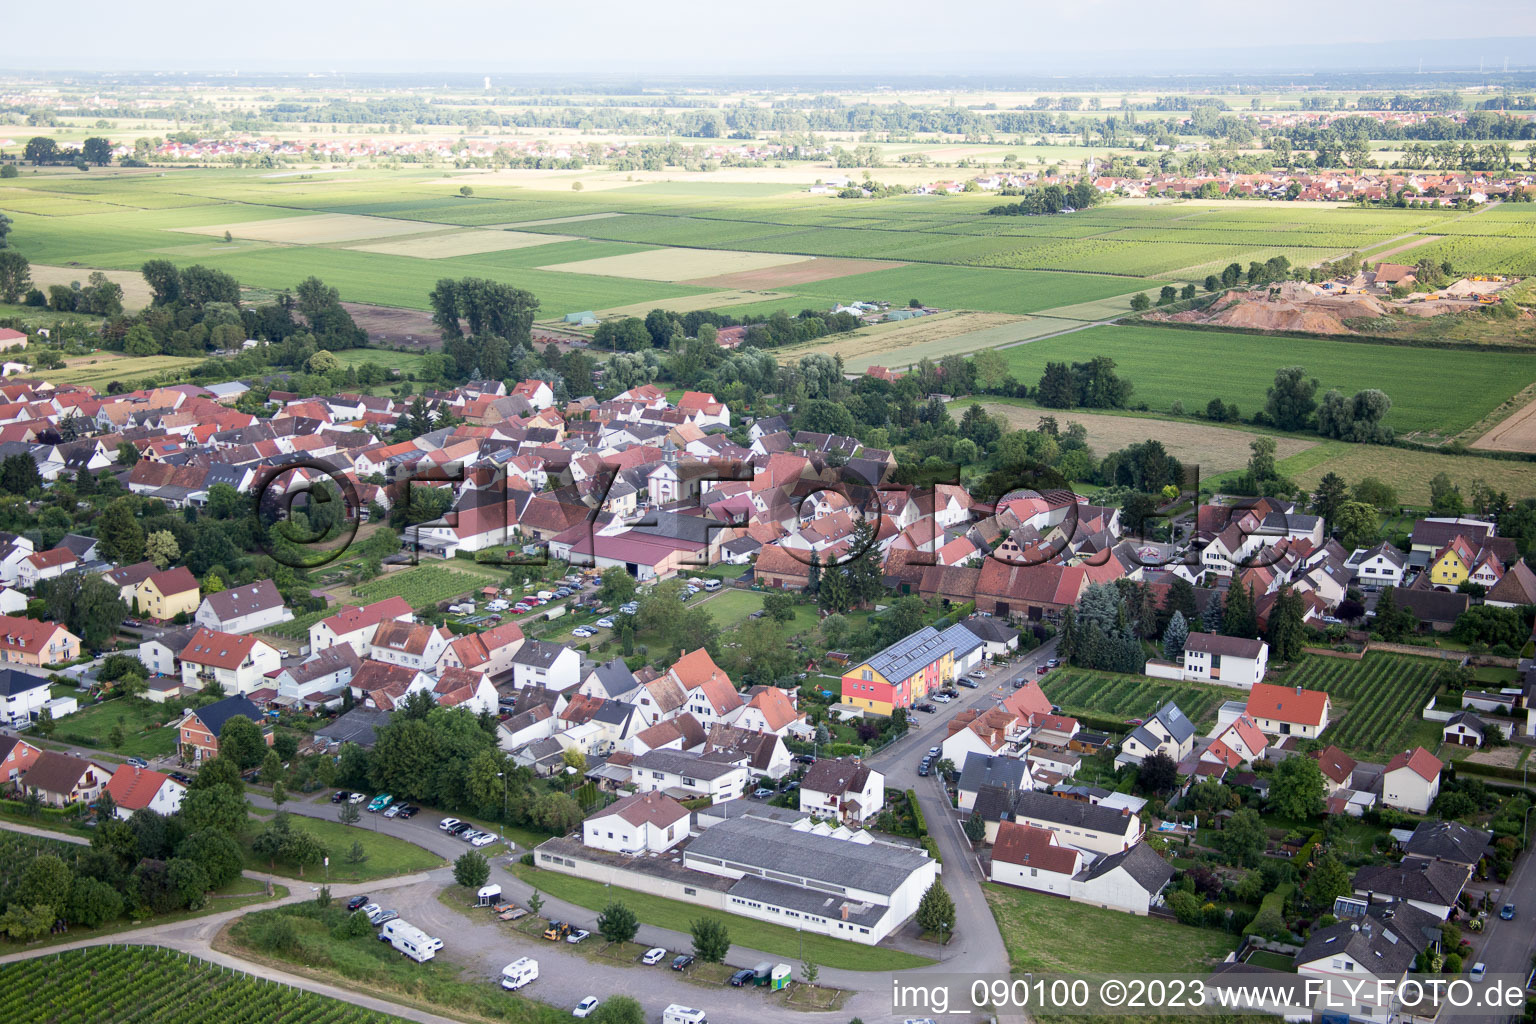 Ortsteil Duttweiler in Neustadt an der Weinstraße im Bundesland Rheinland-Pfalz, Deutschland aus der Drohnenperspektive